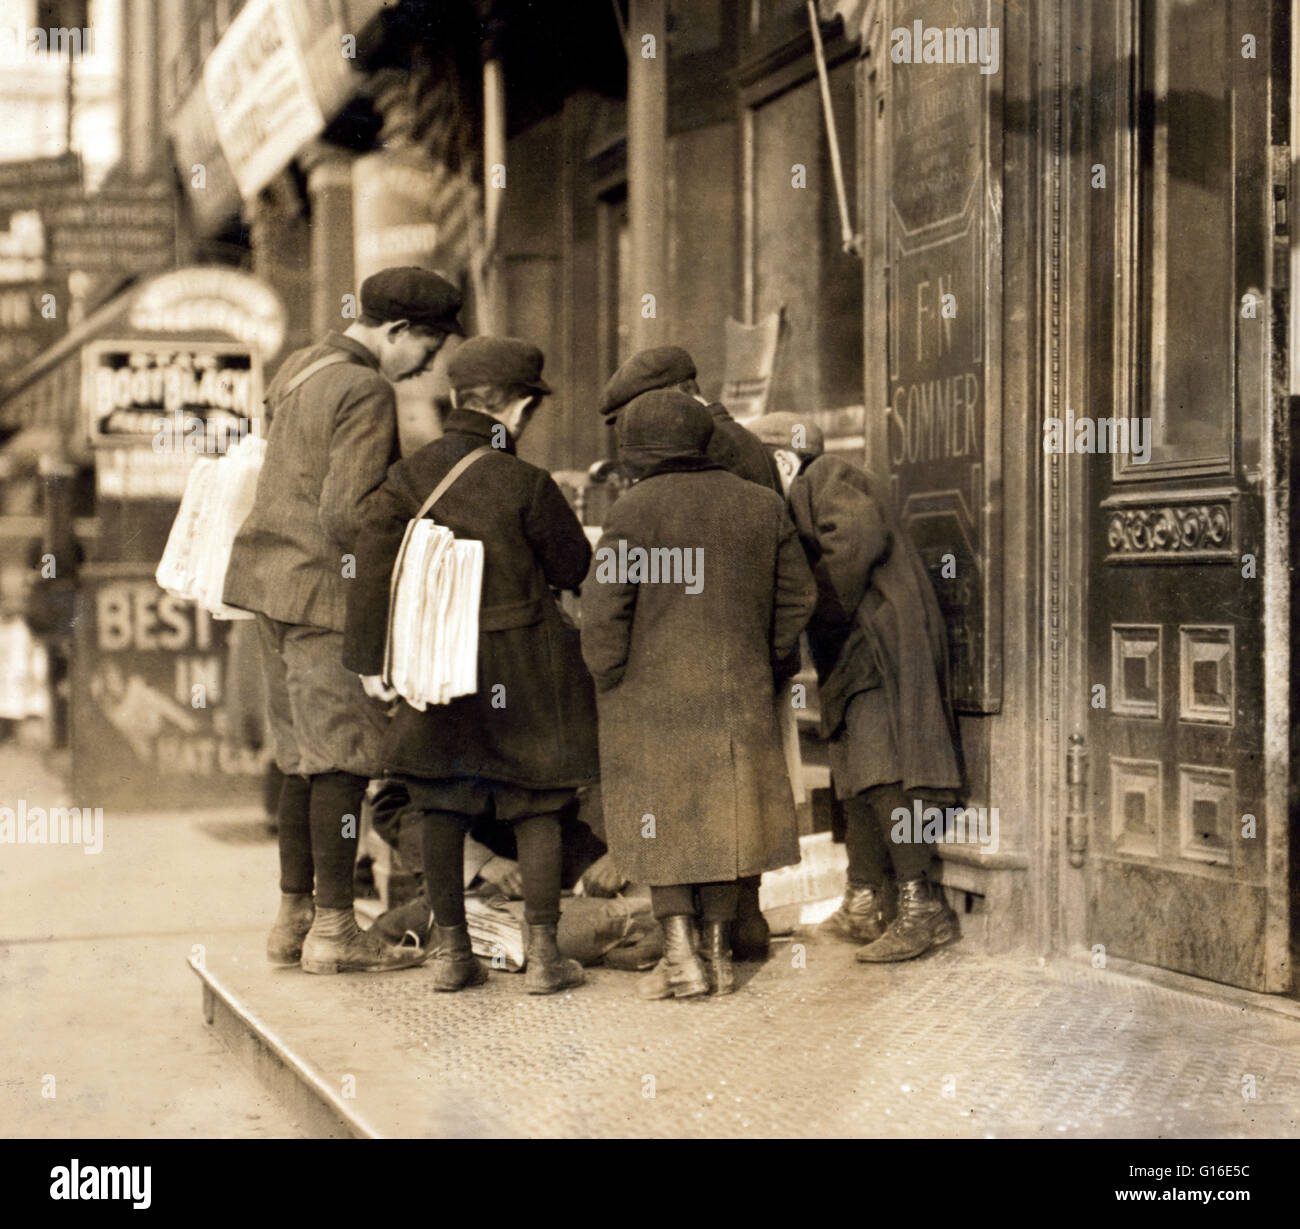 Titolo: "ome di Newark del piccolo newsboys. Posizione: Newark, New Jersey. Dicembre 1909." La posizione della paperboy occupa un posto di rilievo in molti paesi tra cui gli Stati Uniti, Canada, Regno Unito, Australia, Nuova Zelanda, Irlanda e japa Foto Stock